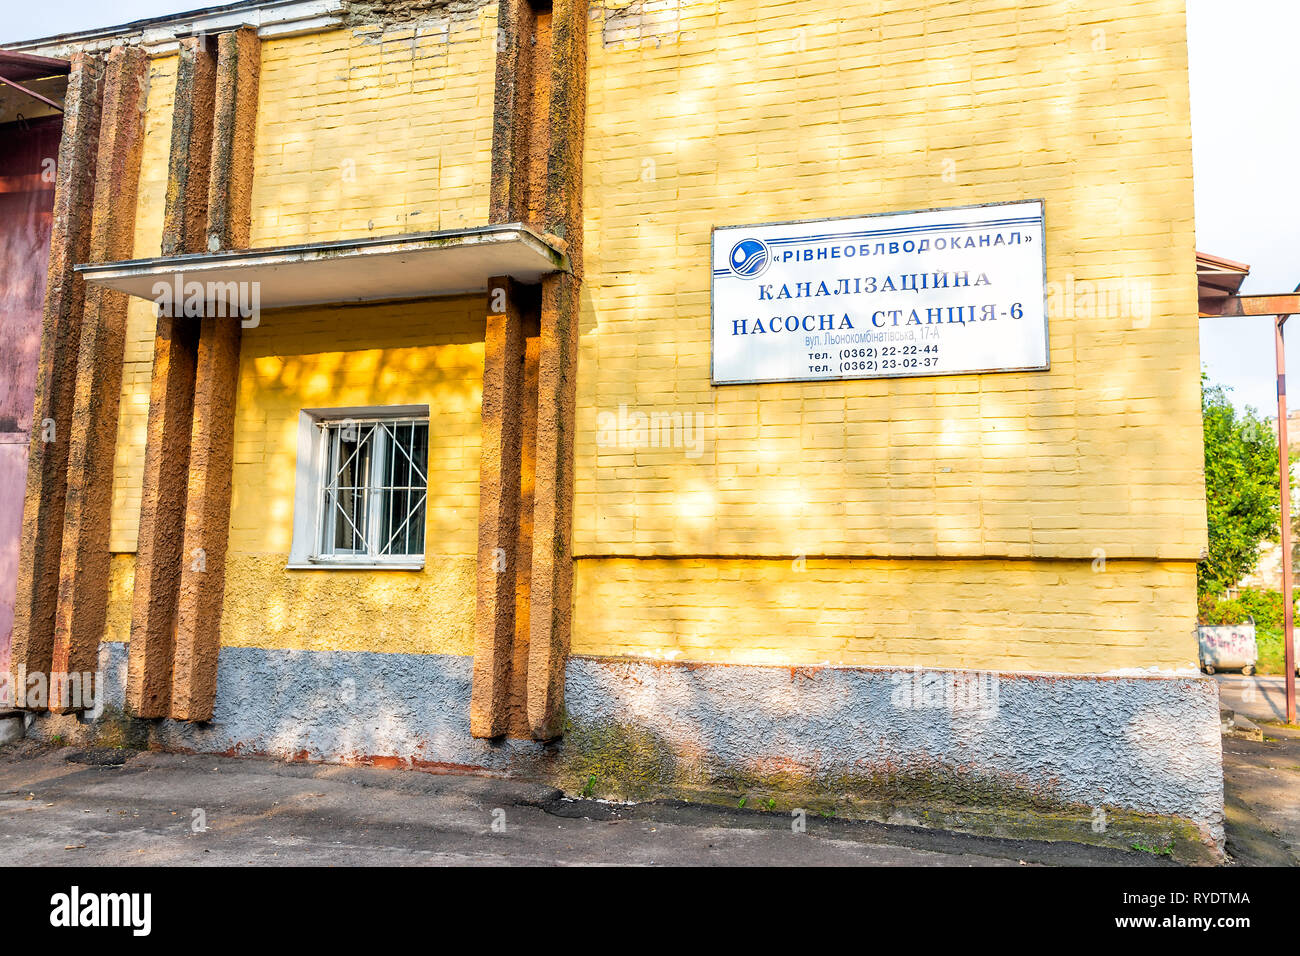 Rivne, Ukraine - le 21 août 2018 : Rovno architecture ancienne ville dans l'ouest de l'Ukraine et de signer en cyrillique ukrainien pour station de pompage des eaux usées locales Banque D'Images